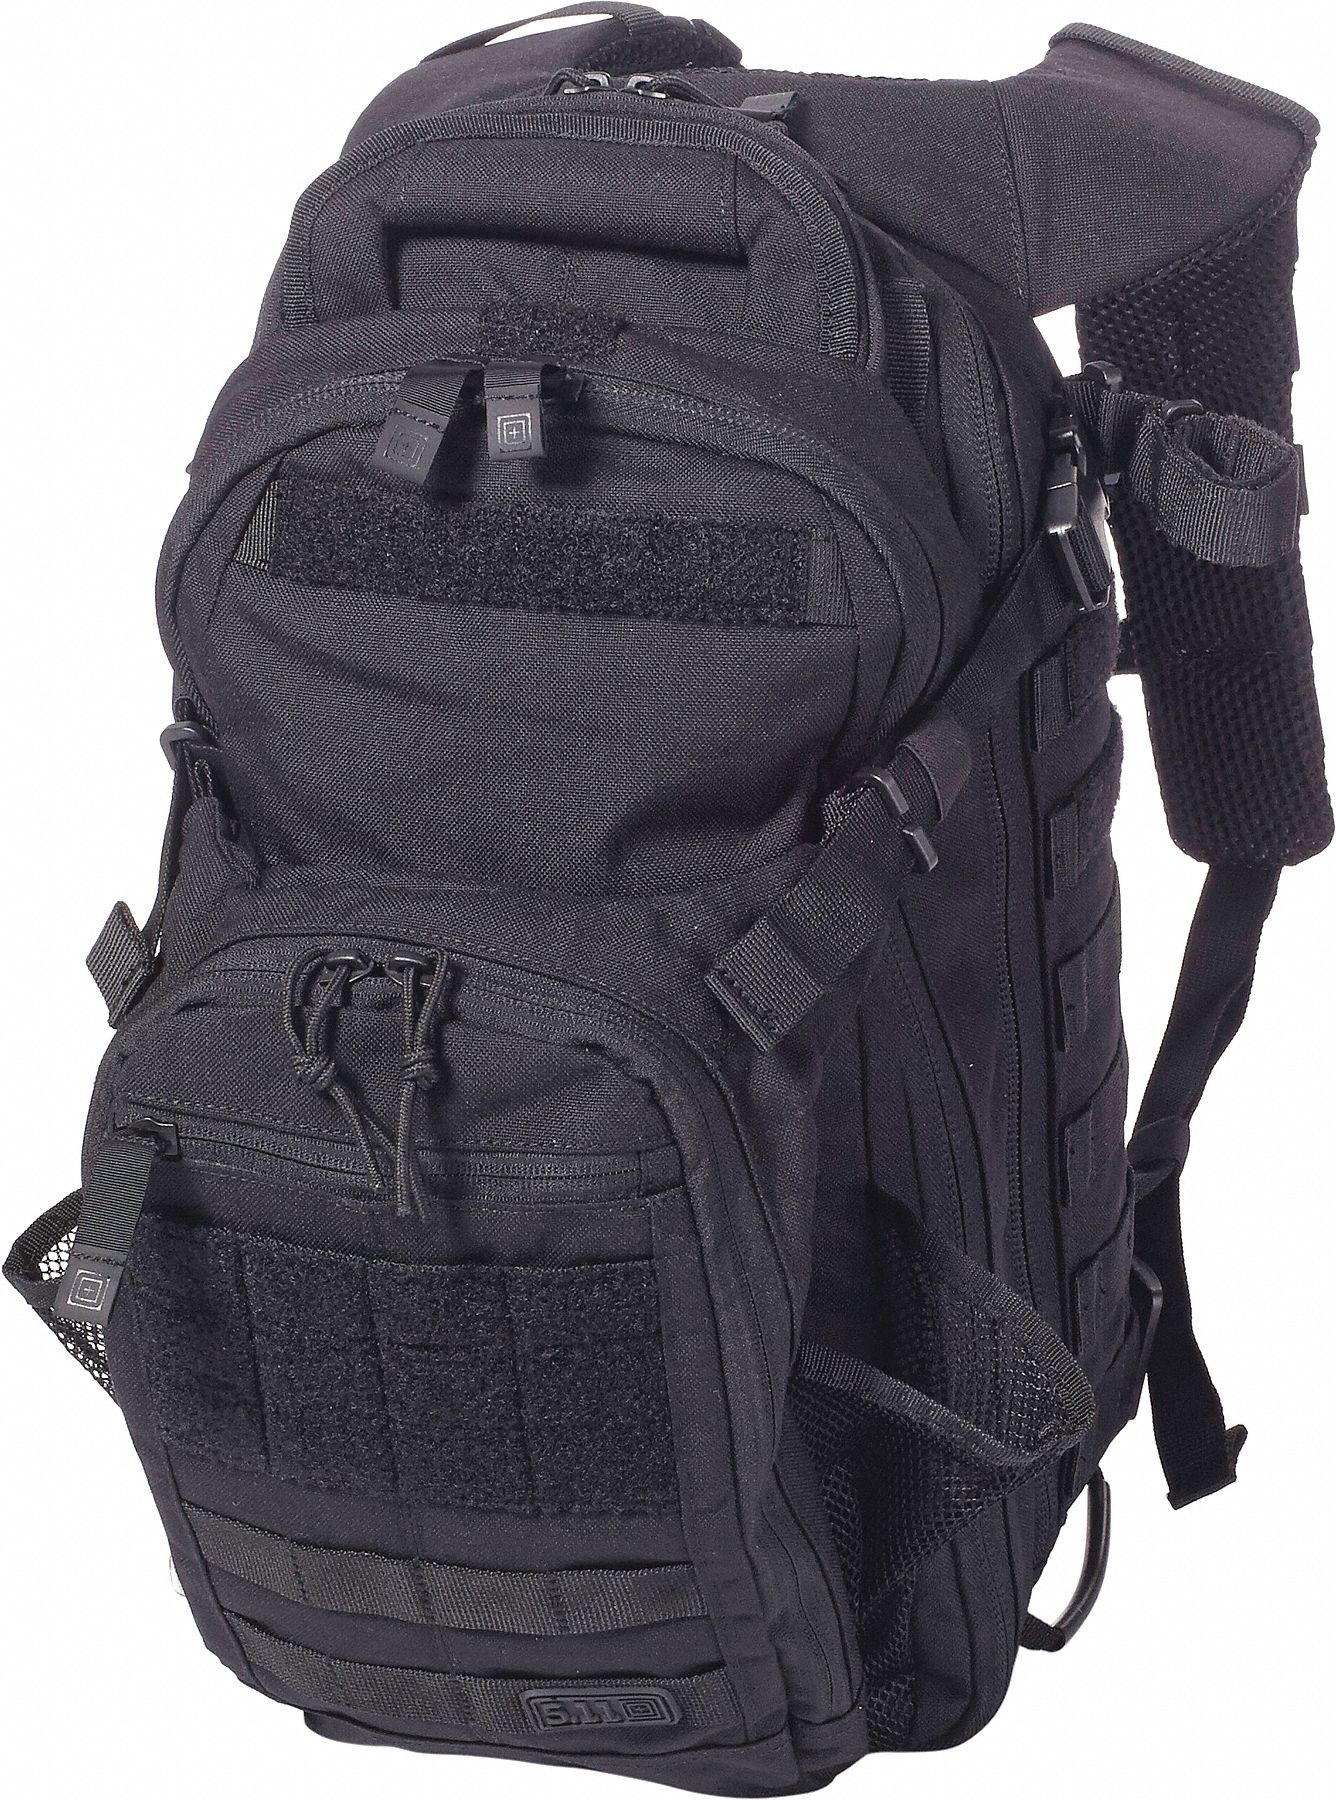 5.11 TACTICAL, Black, All Hazards Nitro Backpack - 32JV80|56167 - Grainger